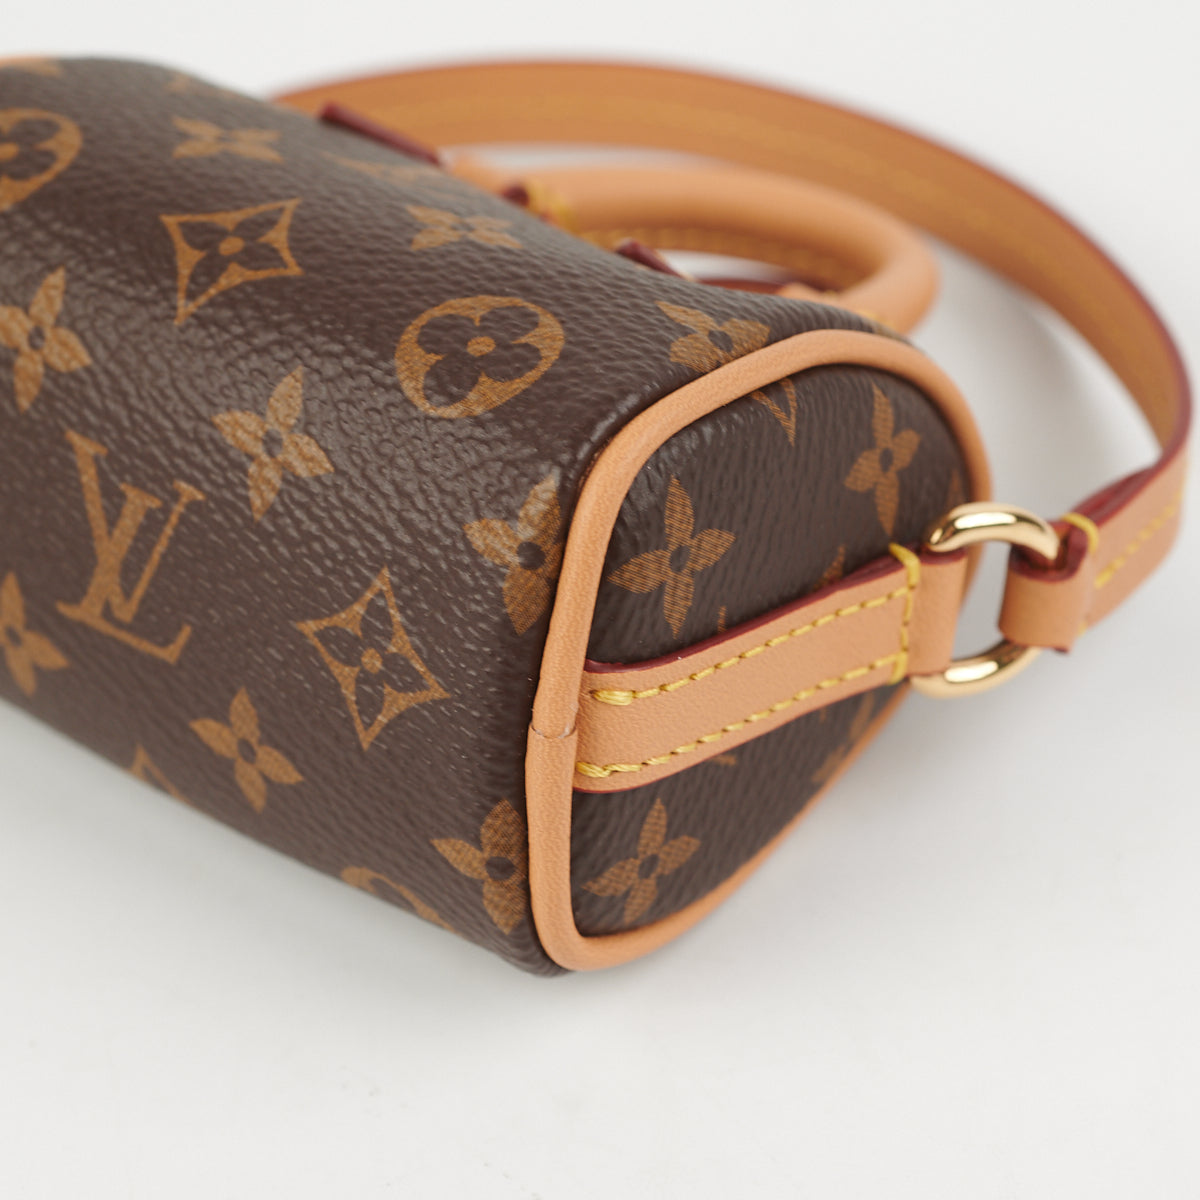 How cute is this Micro Speedy bag charm 😂 : r/Louisvuitton